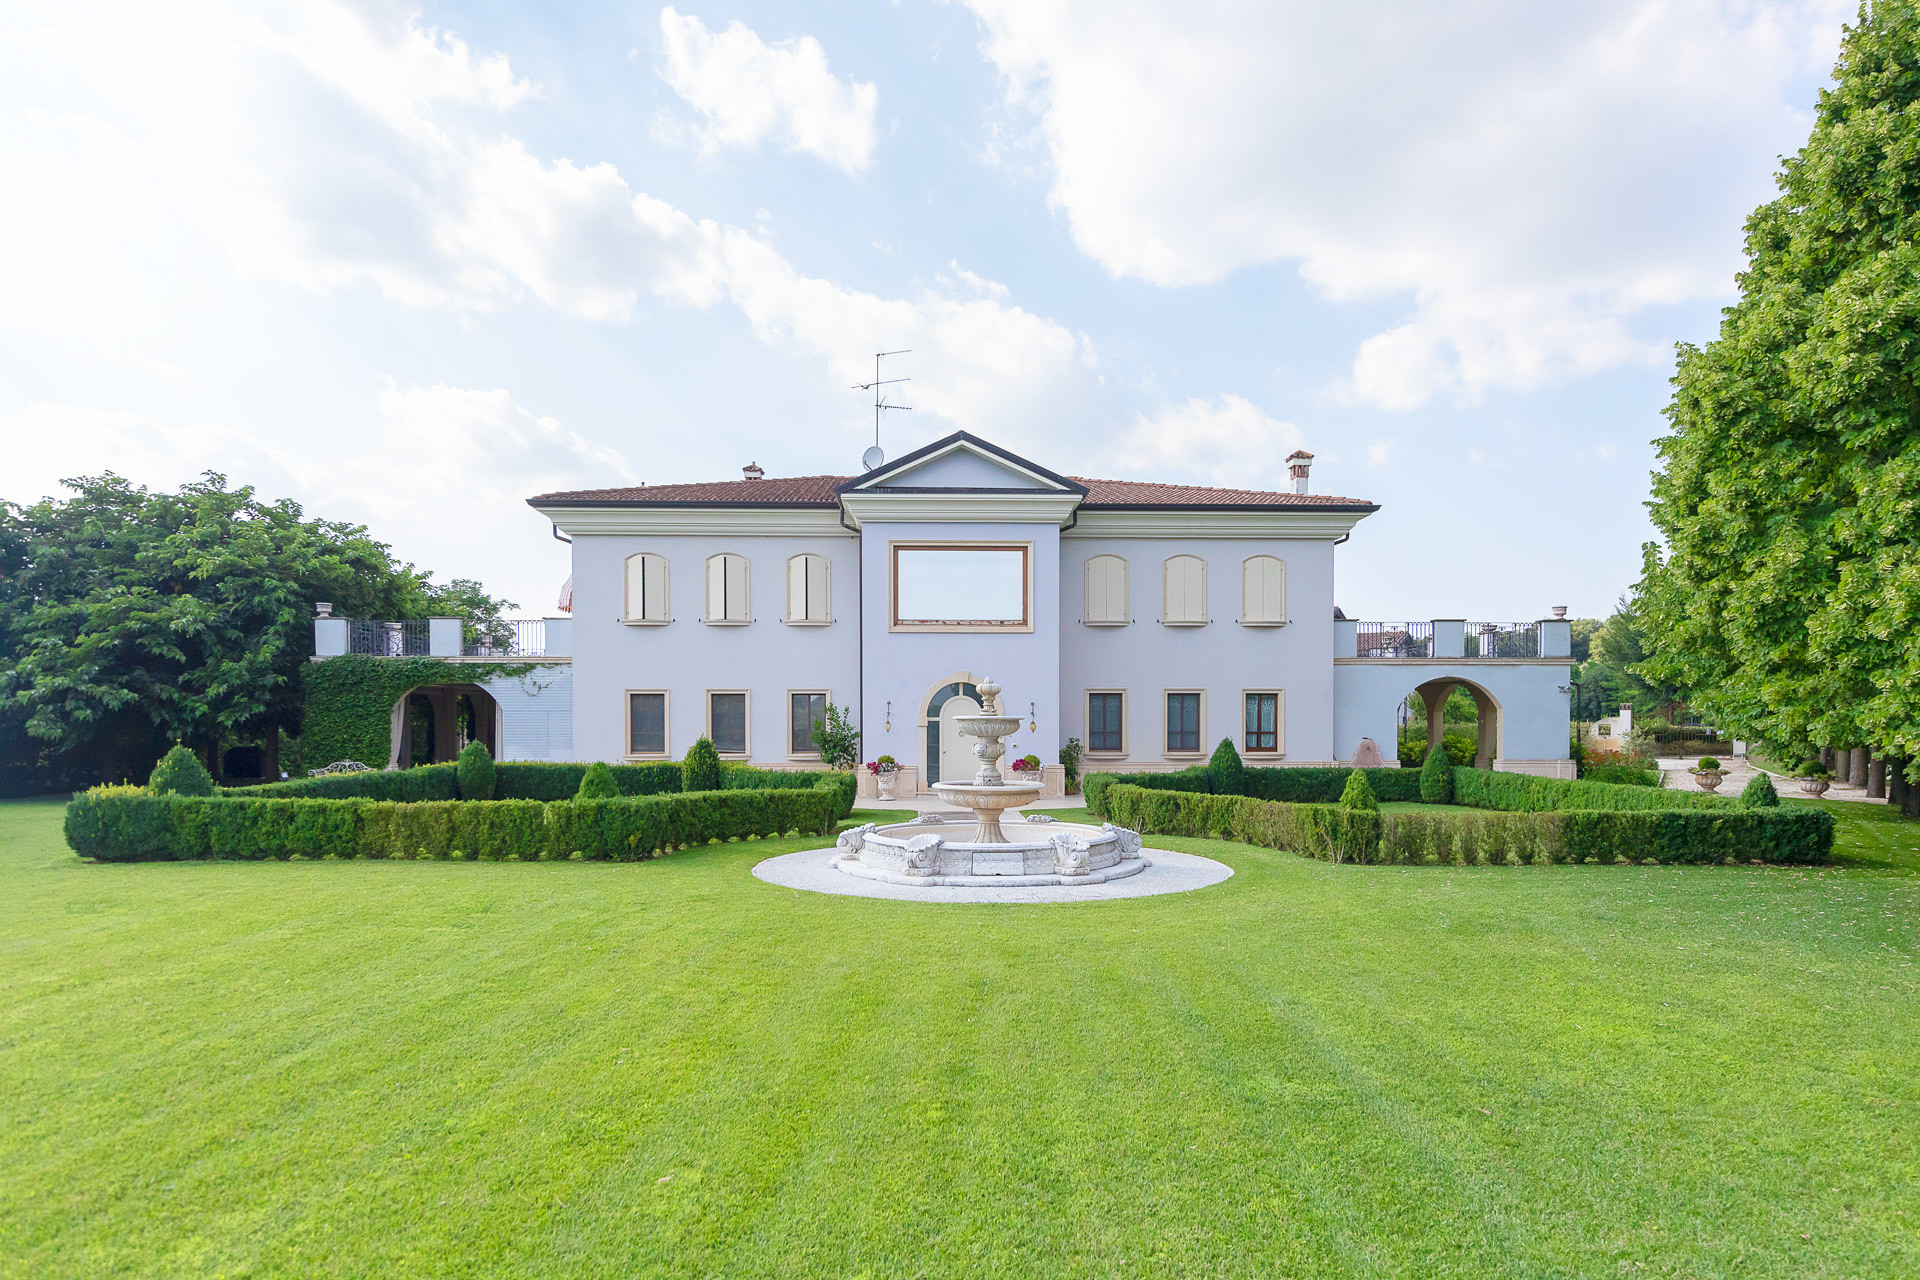 Luxury villa among hills and vineyards